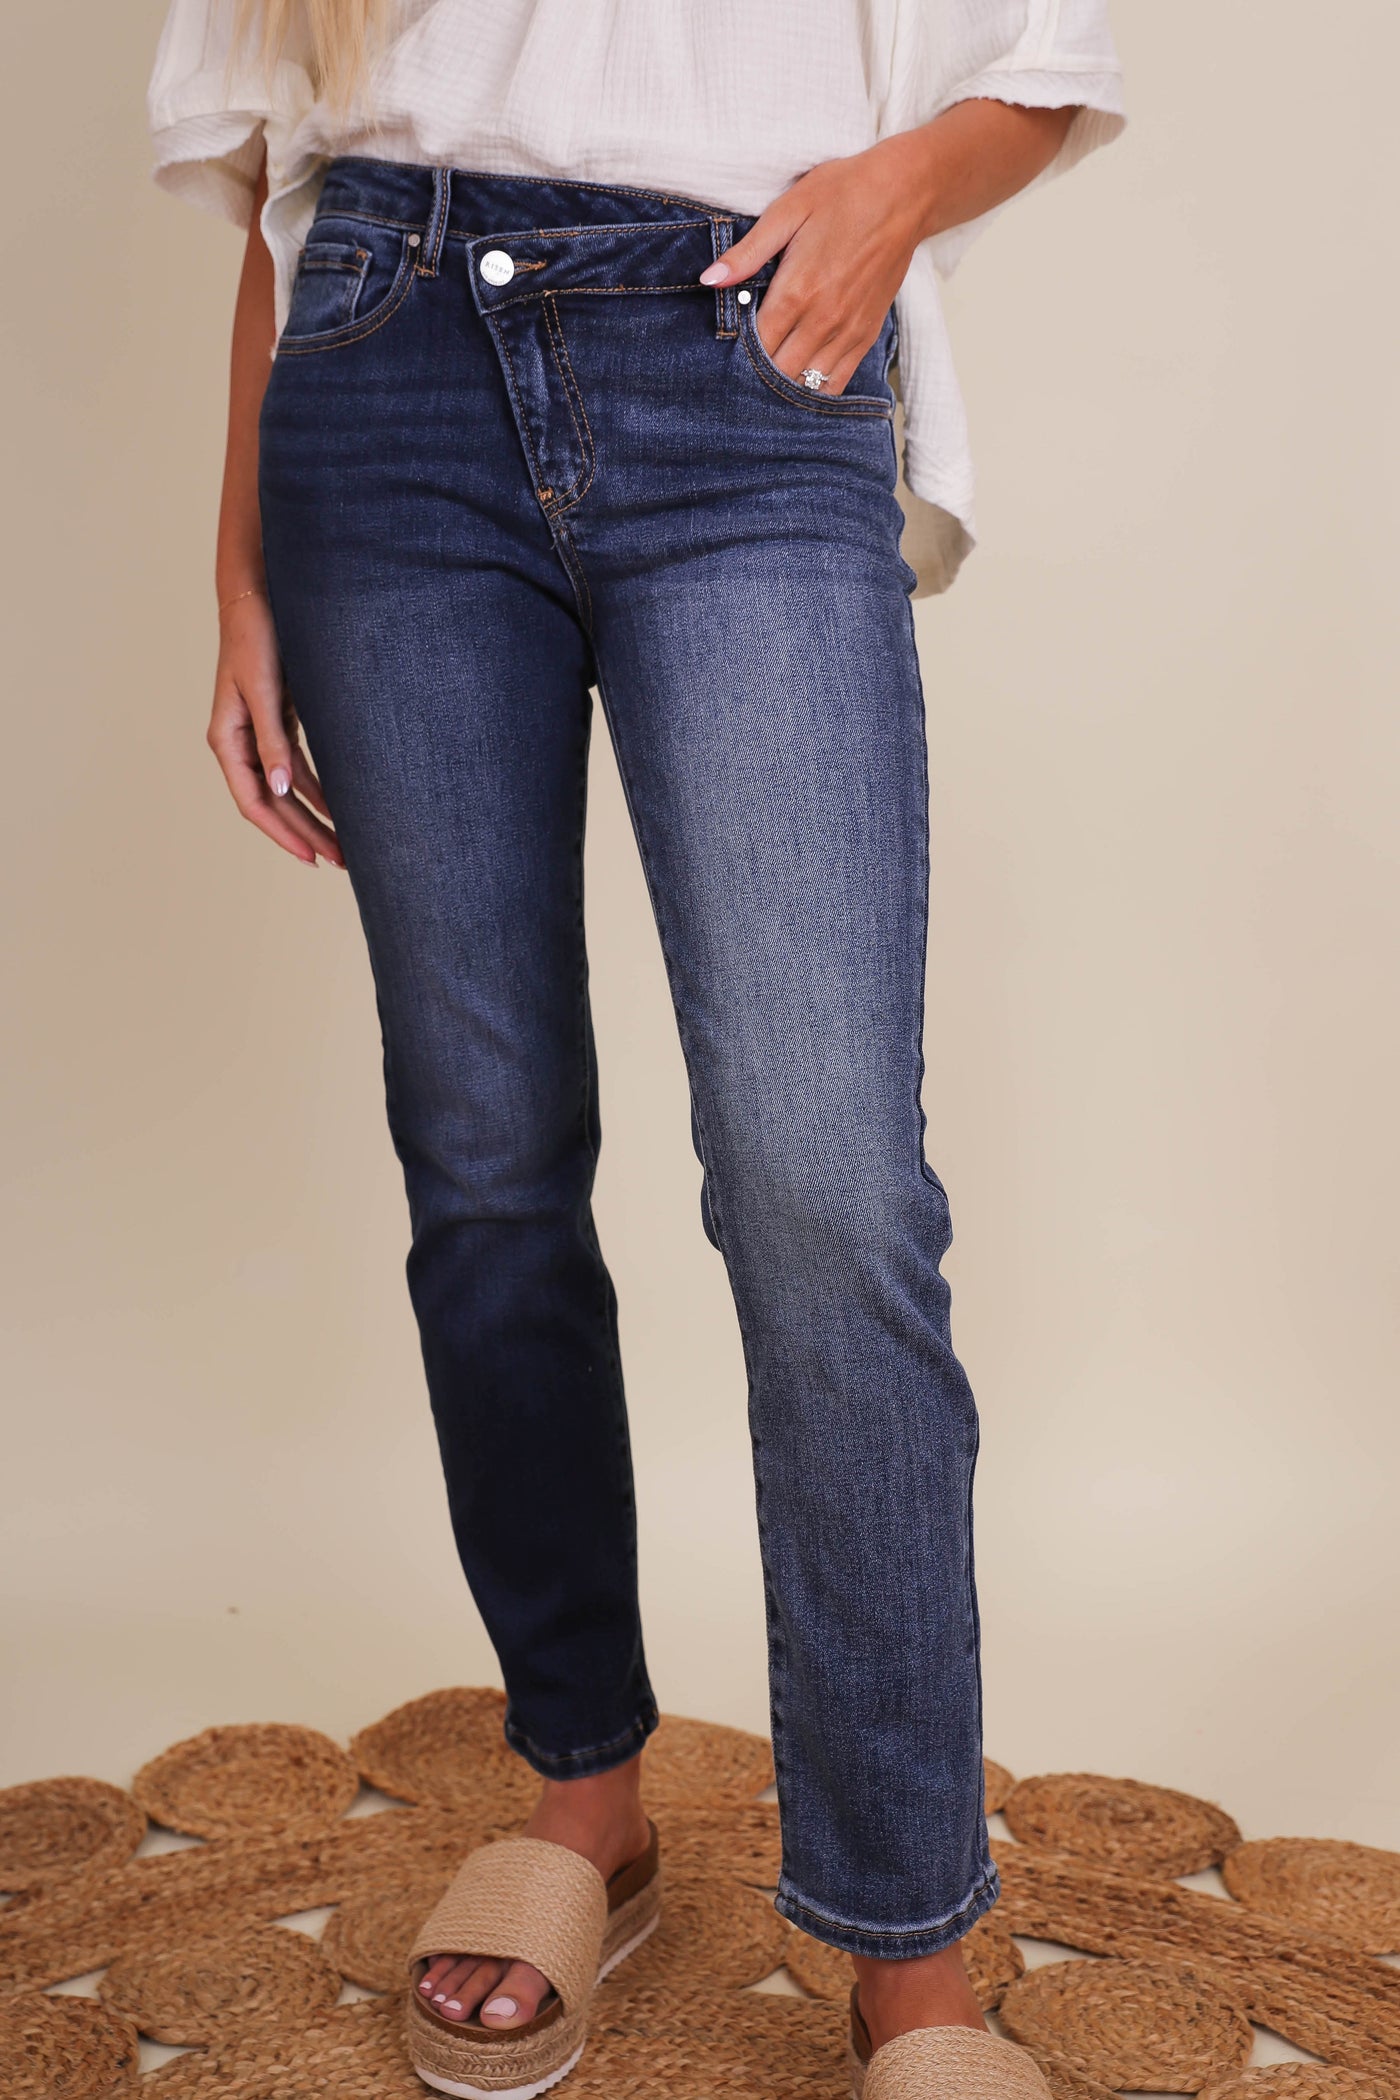 Crisscross Waist Jeans- Women's Dark Wash Skinny Jeans- Risen Jeans